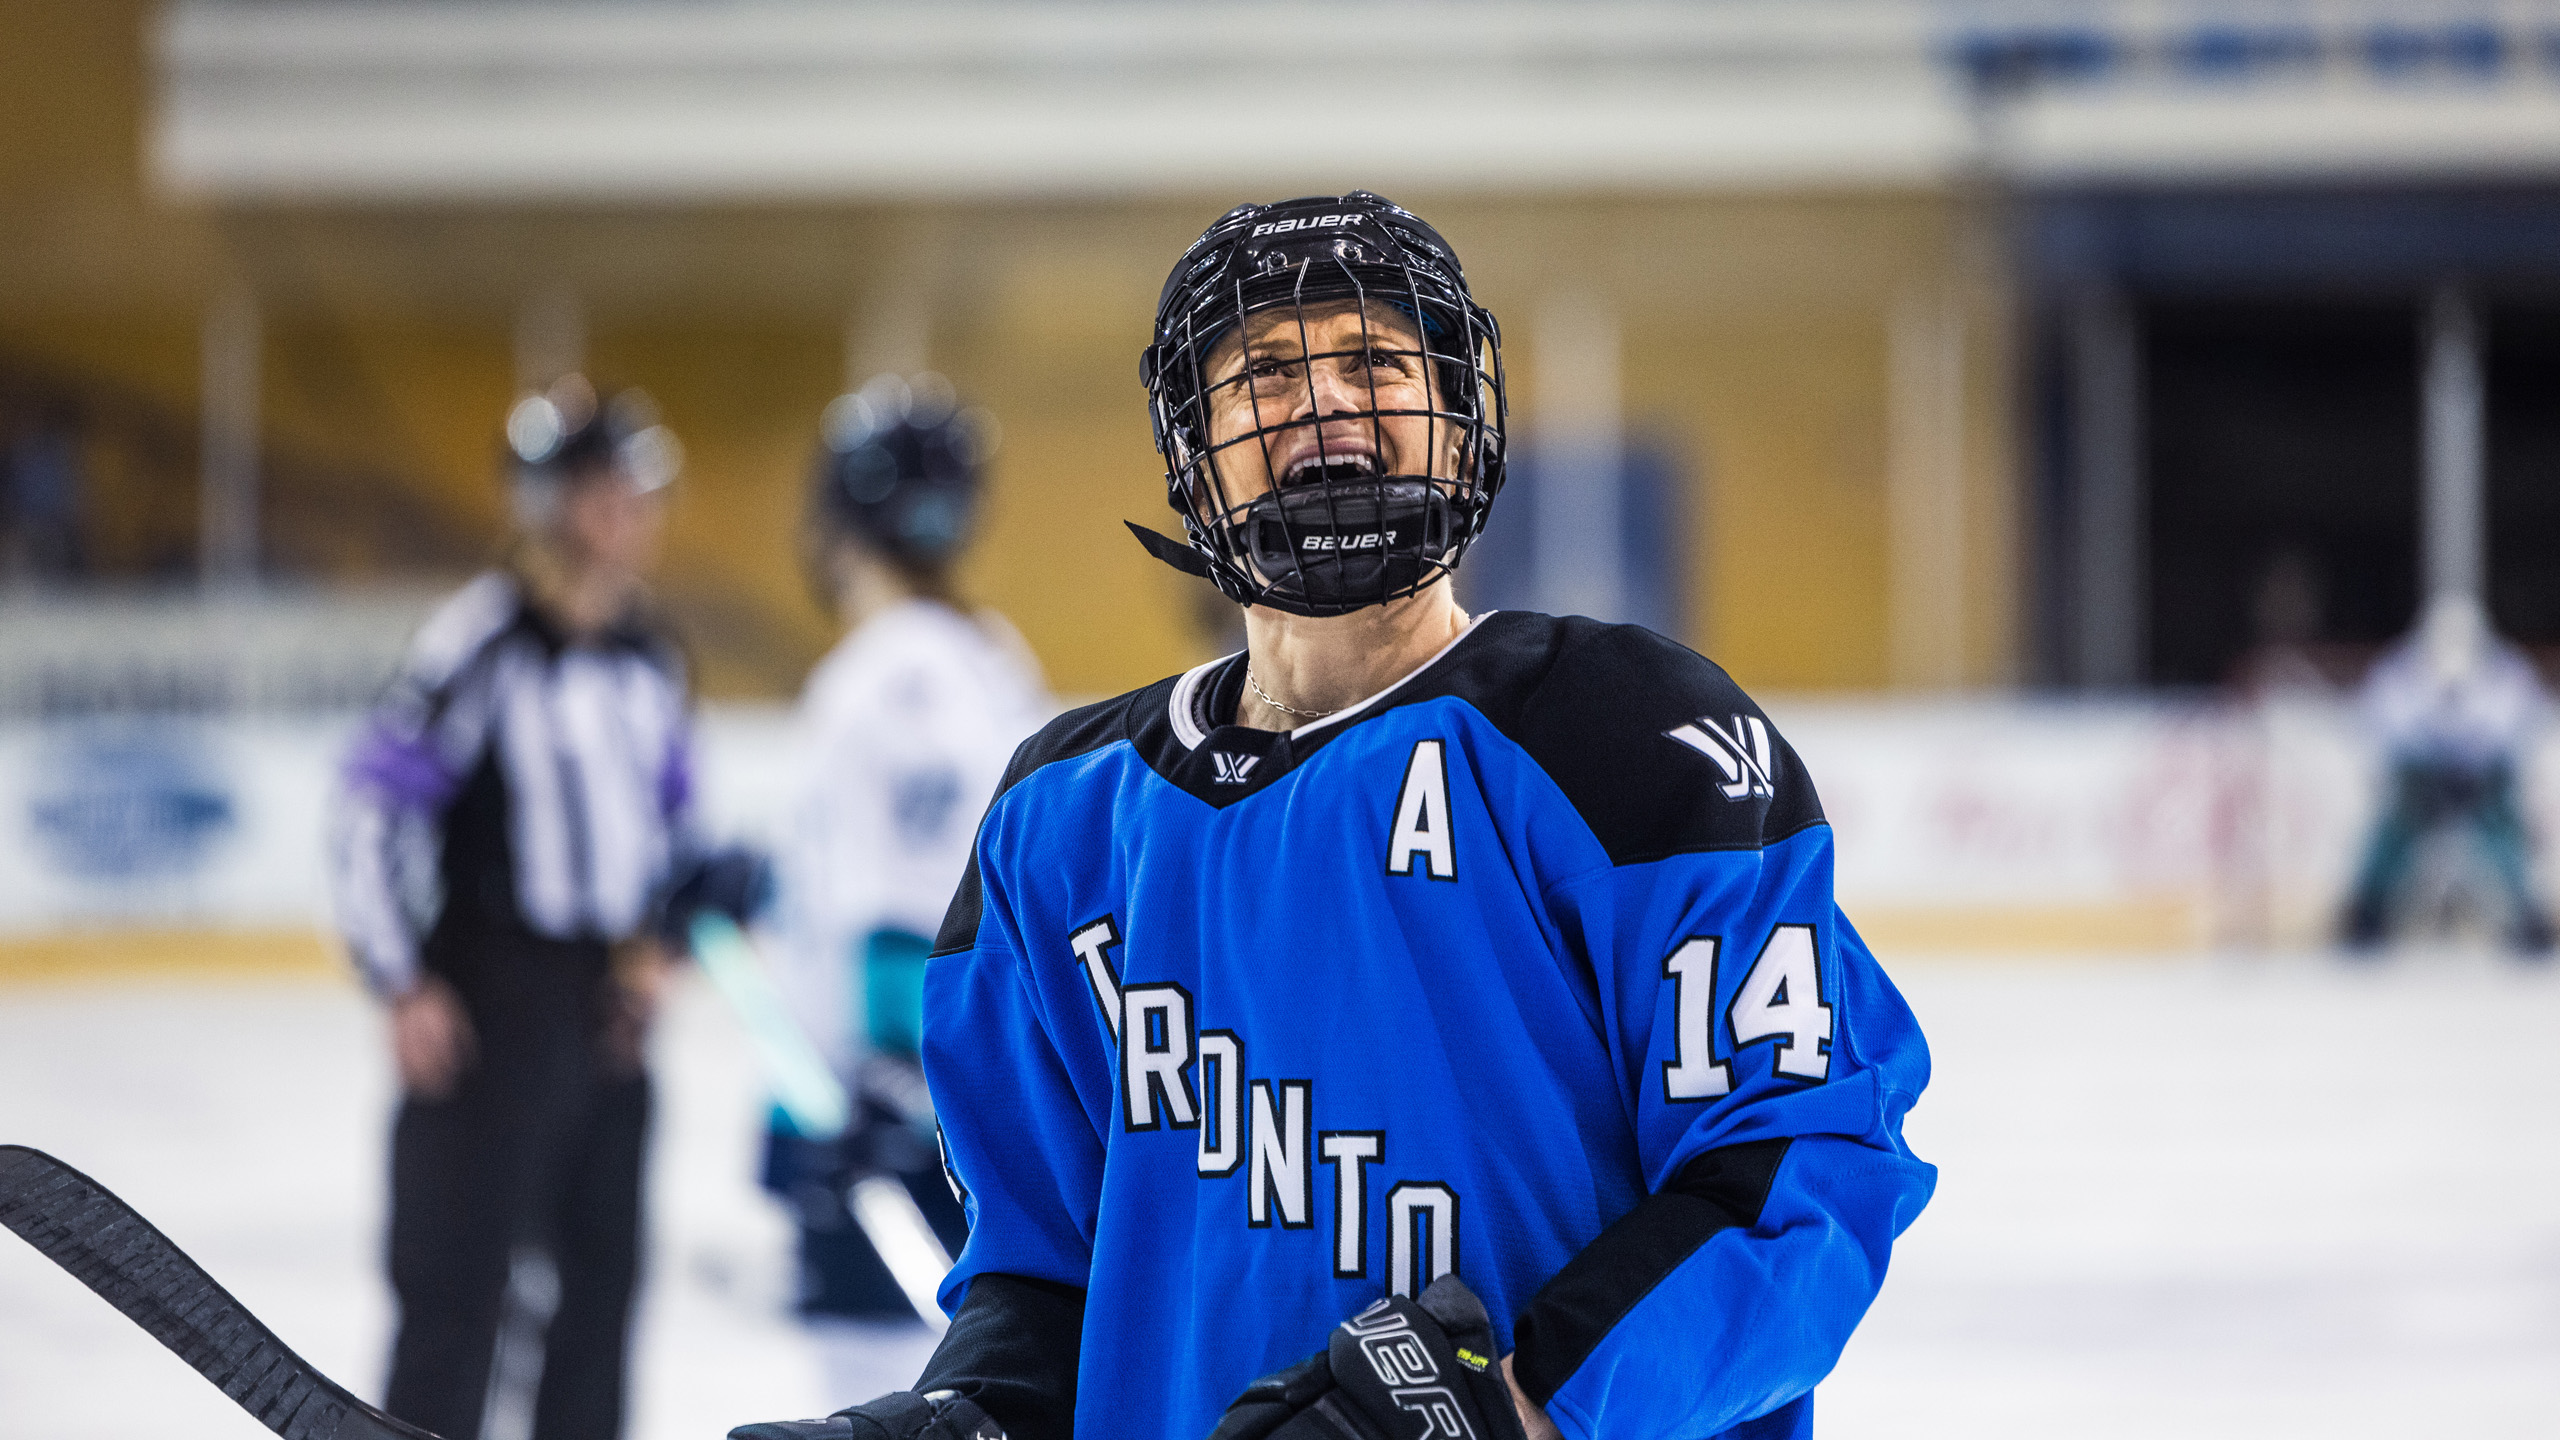 PWHL Toronto player Renata Fast skates on the ice